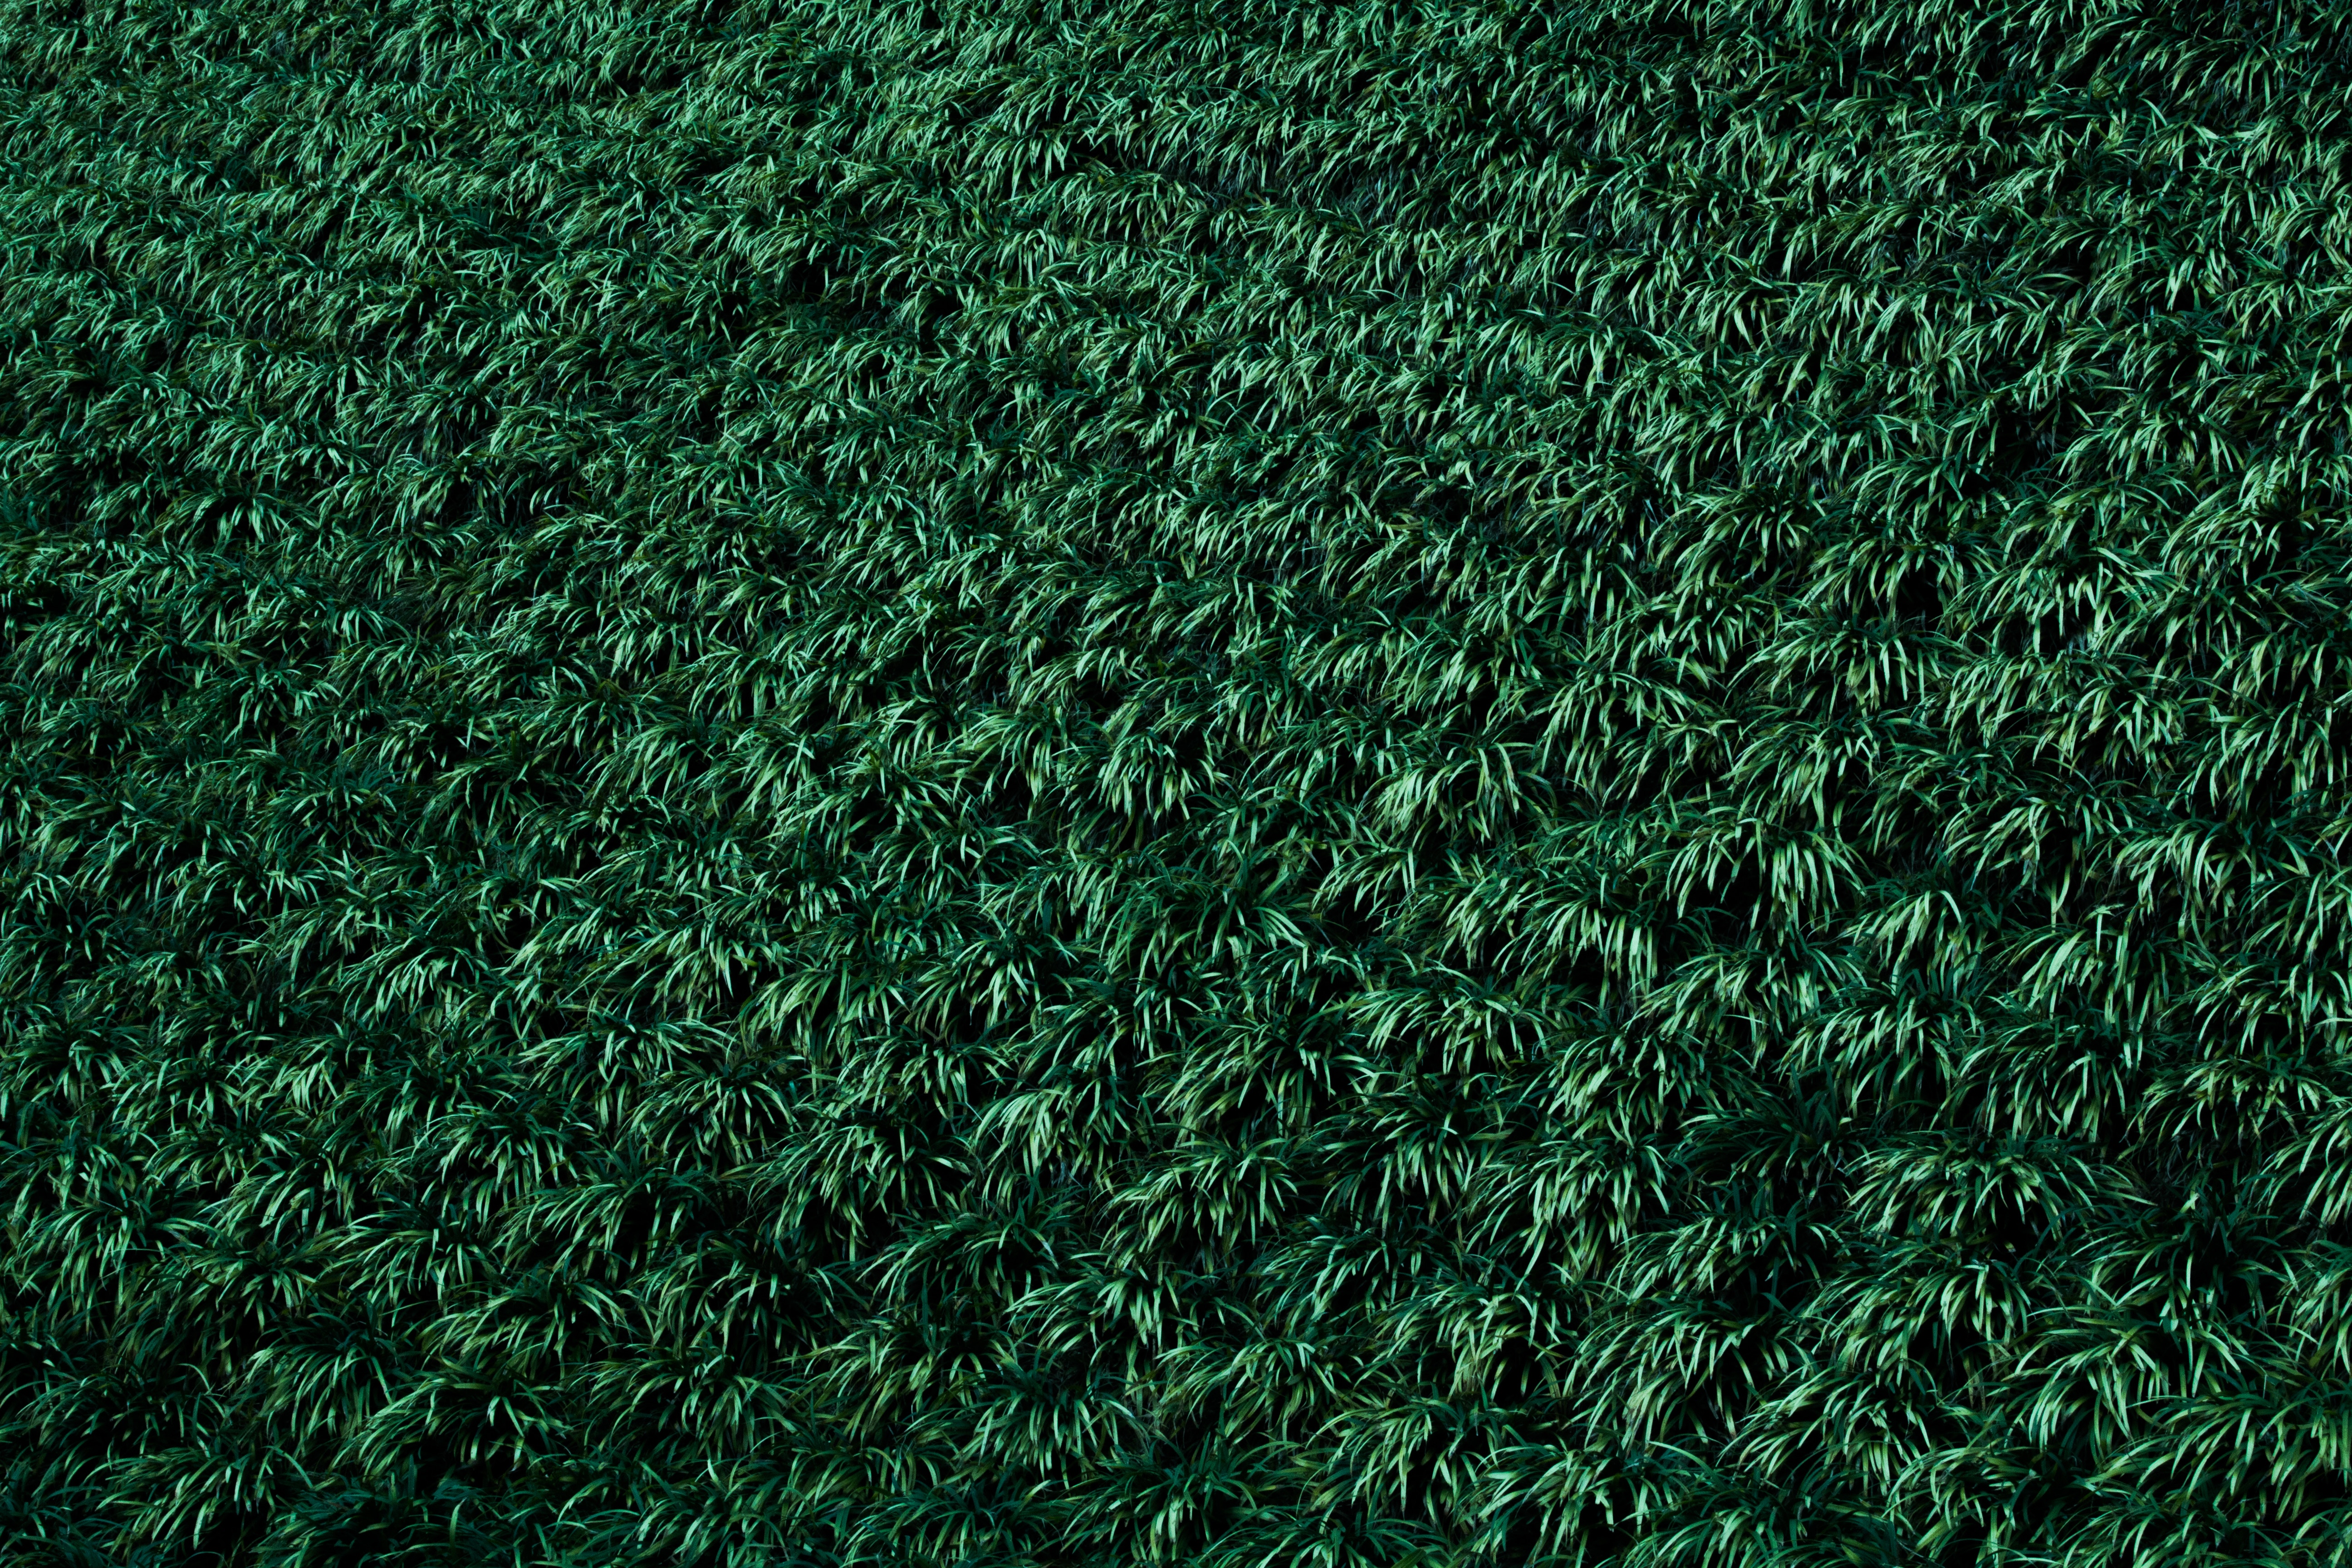 desktop Images plants, nature, grass, lawn